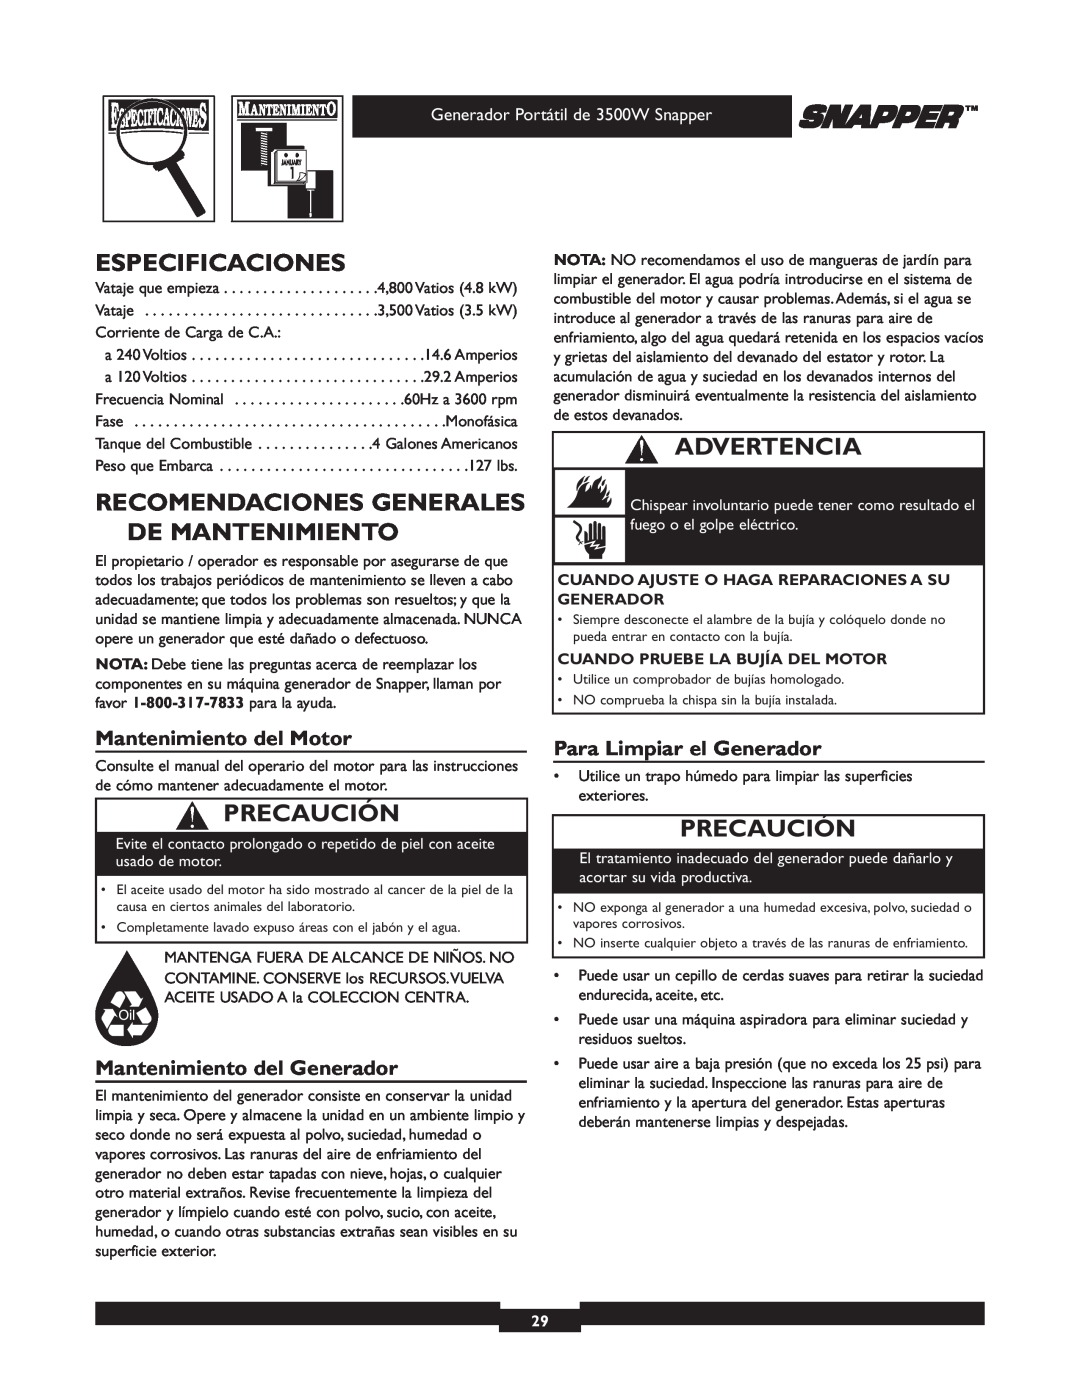 Snapper 3500 manual Especificaciones, Recomendaciones Generales De Mantenimiento, Mantenimiento del Motor, Advertencia 